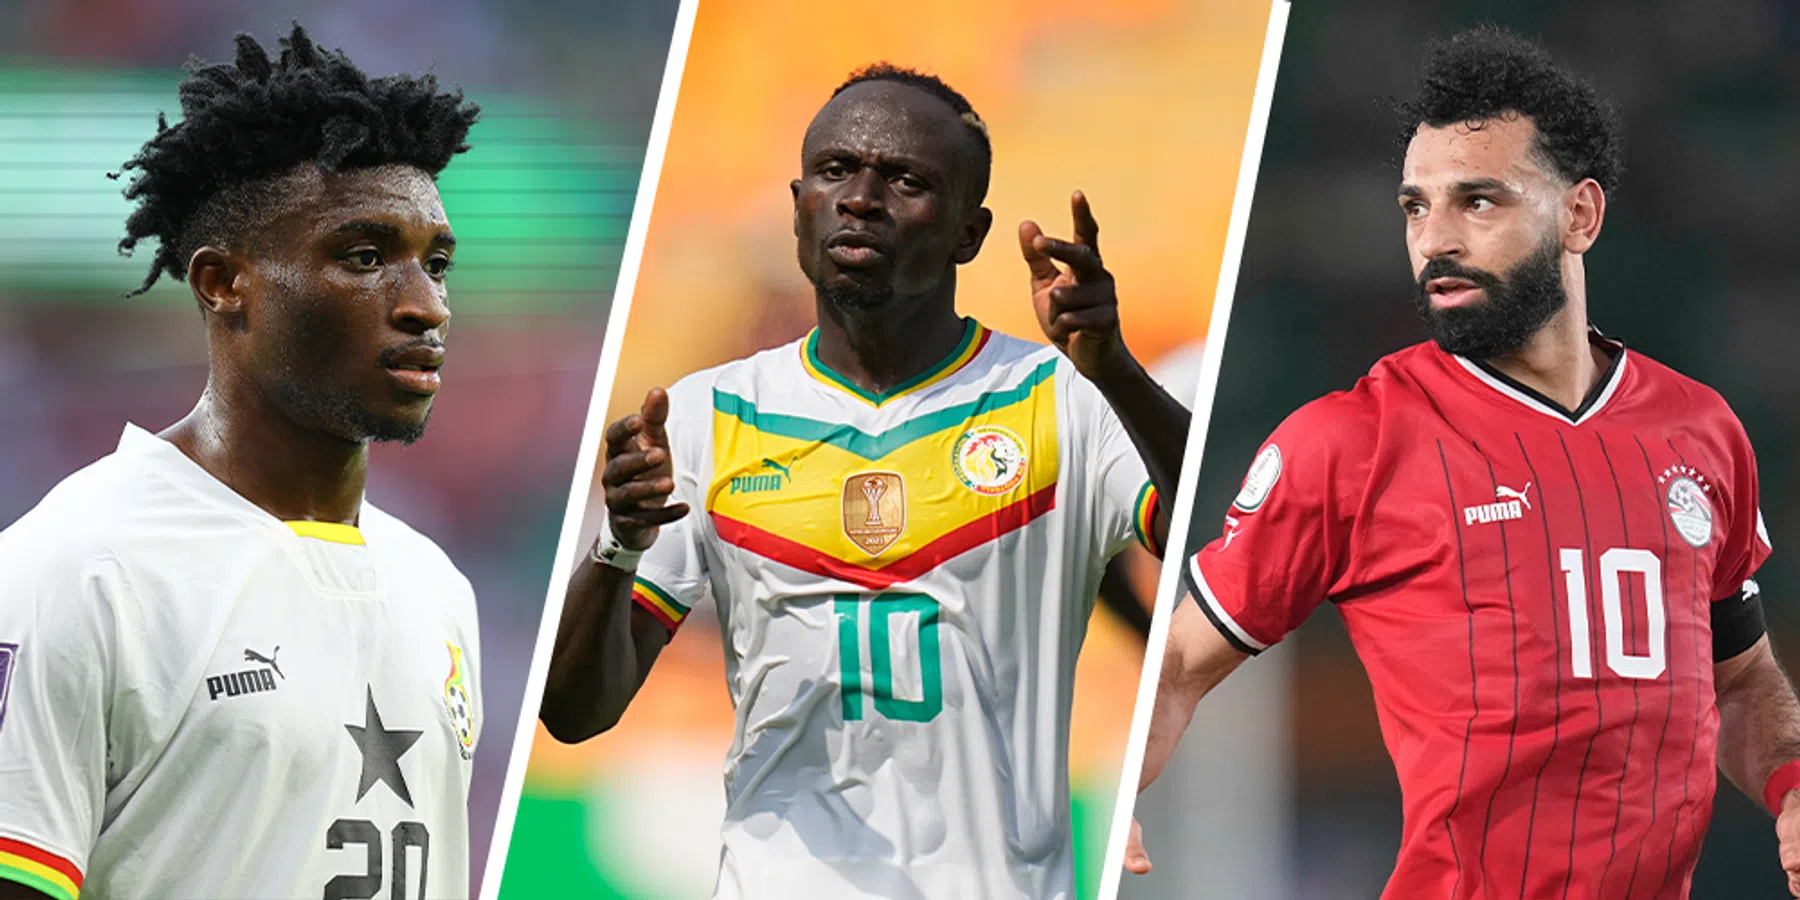 Wie is topscorer van de Afrika Cup?